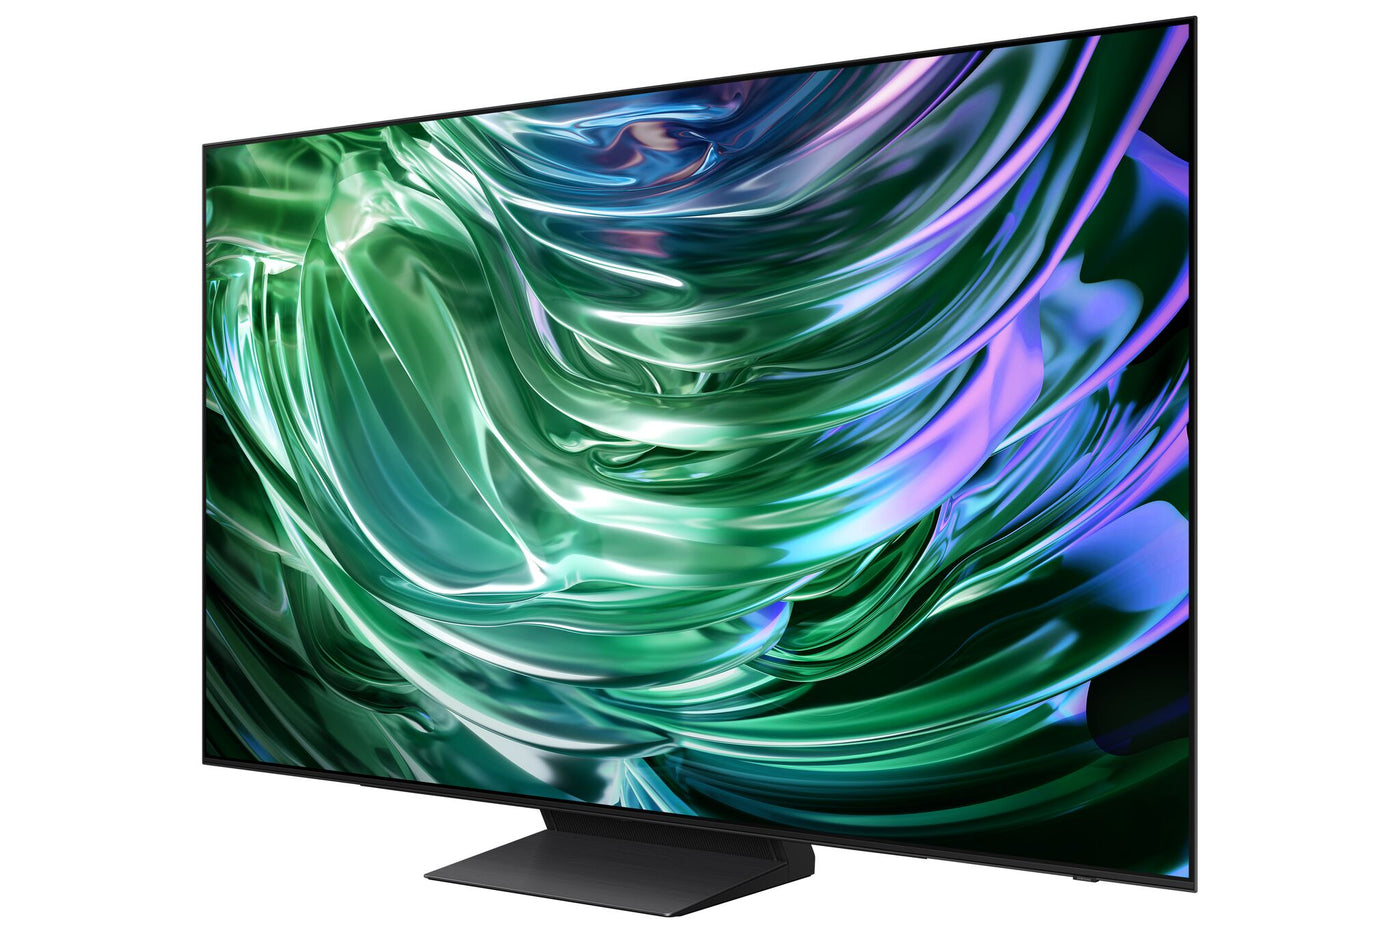 Samsung 65” OLED 4K Tizen Smart TV S90D - QN65S90DAFXZC